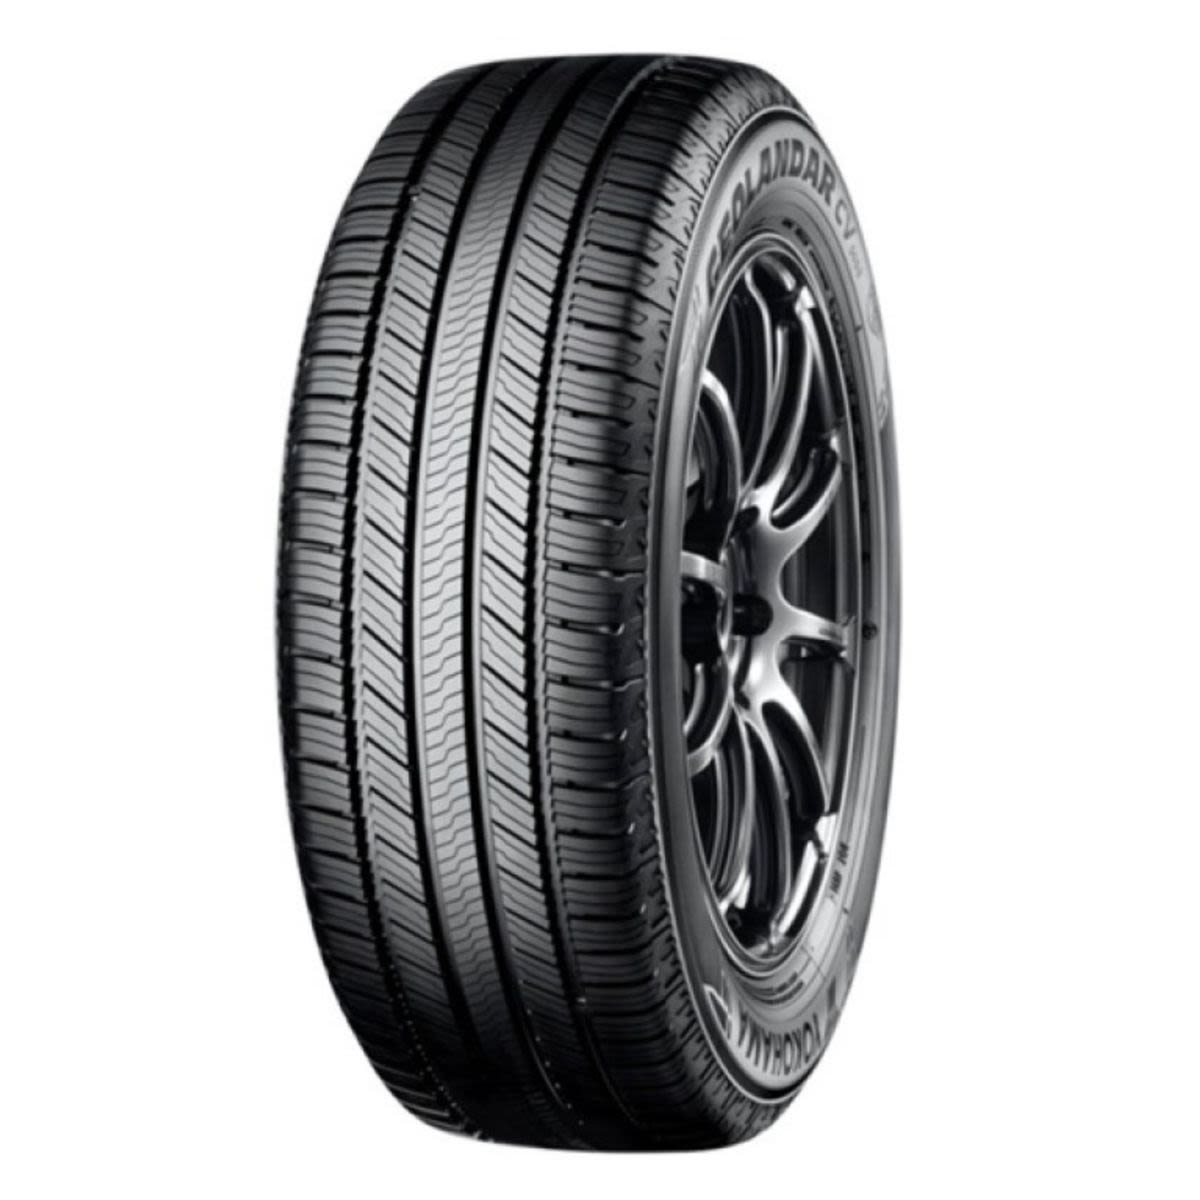 Neumáticos de verano YOKOHAMA Geolandar CV G058 235/65R17 XL 108V